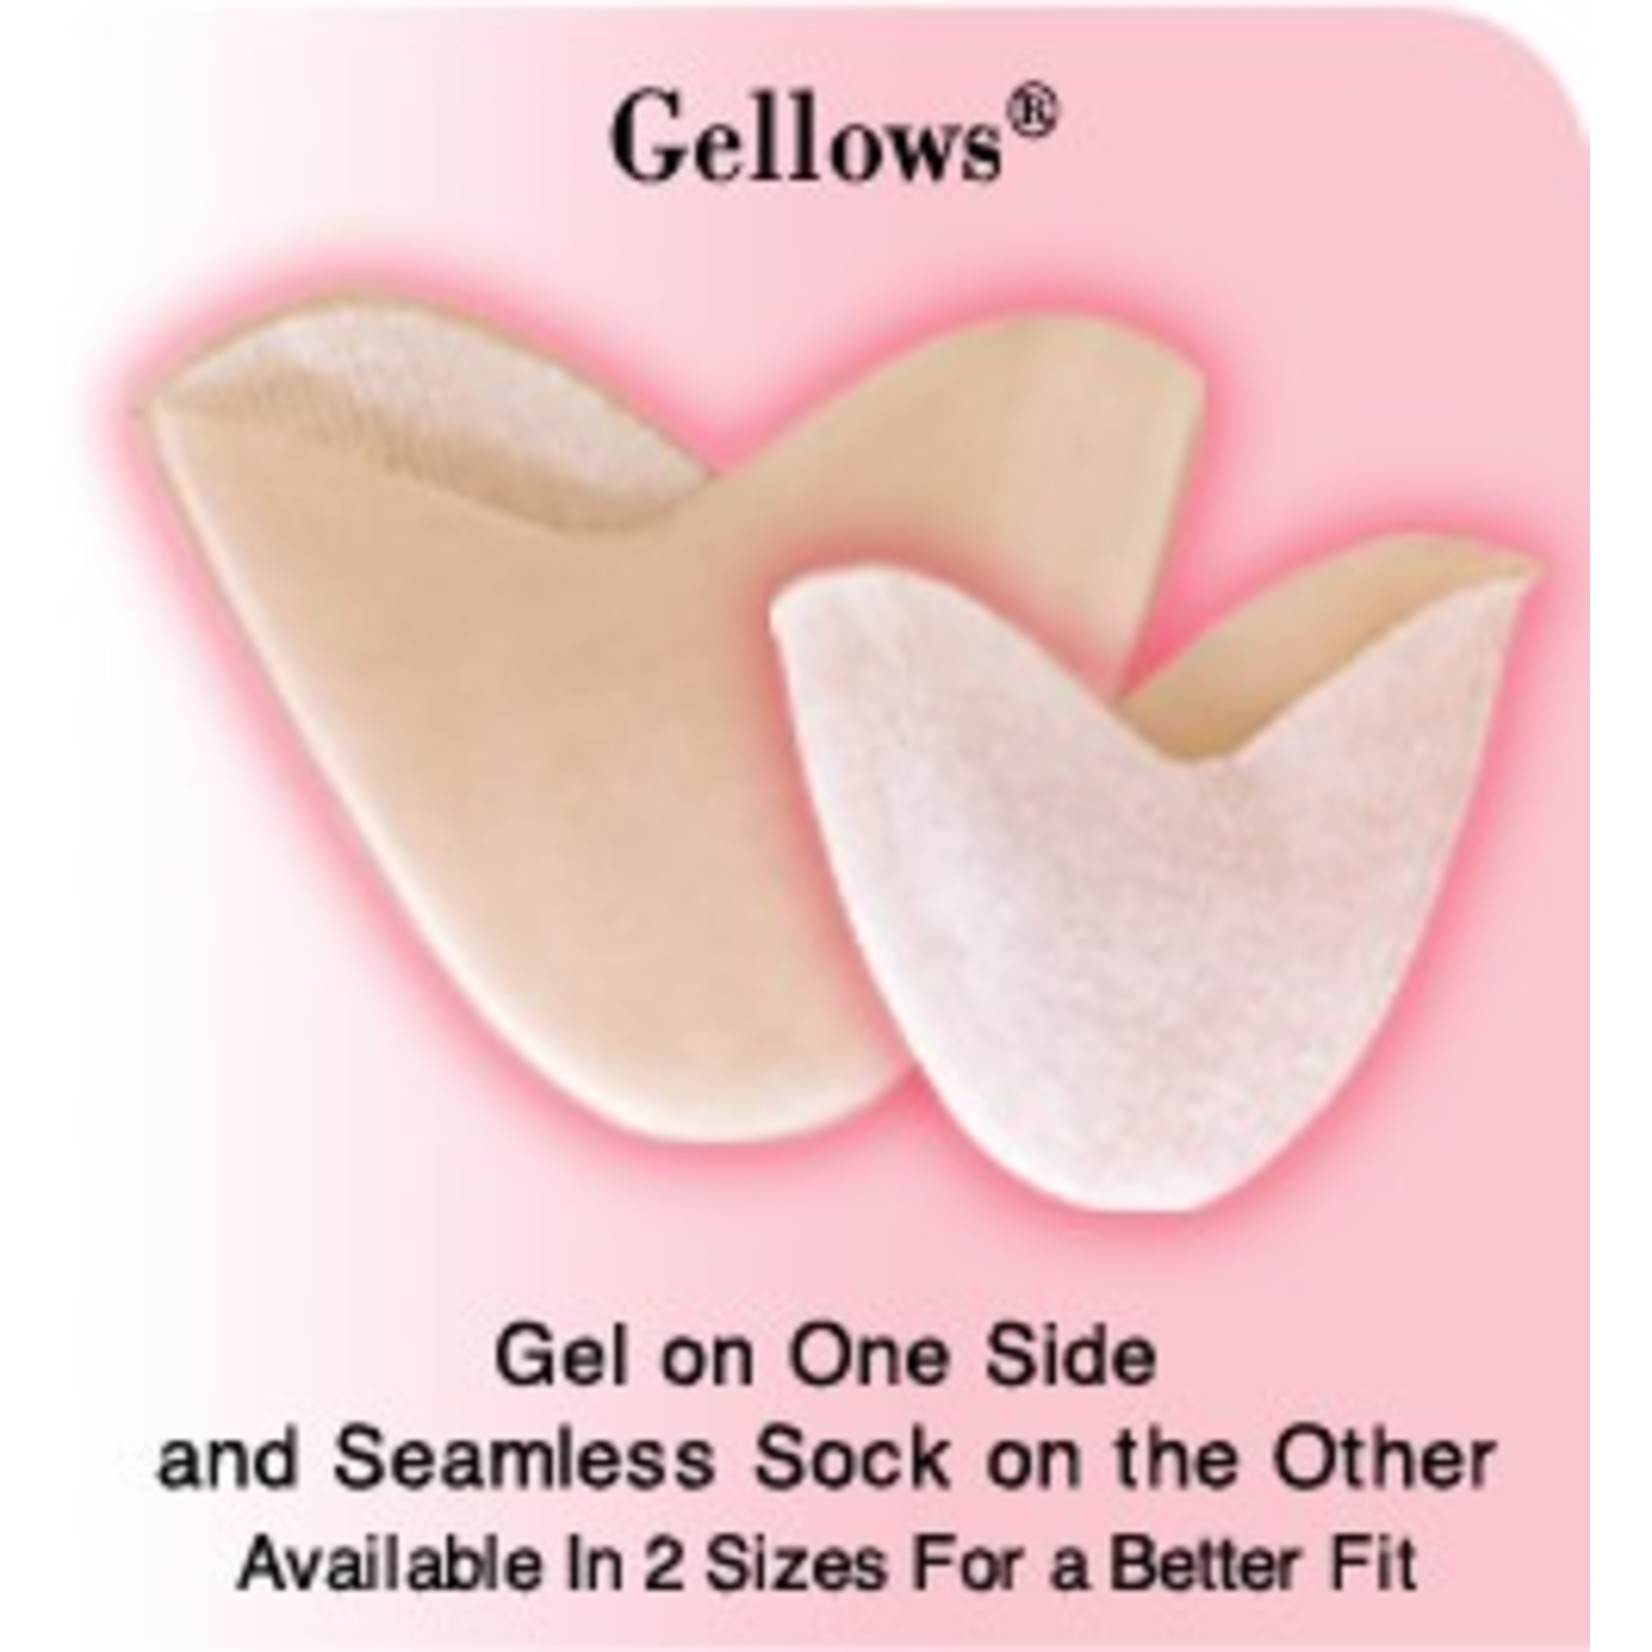 Pillows for Pointe GEL-Gellows Toe Pad